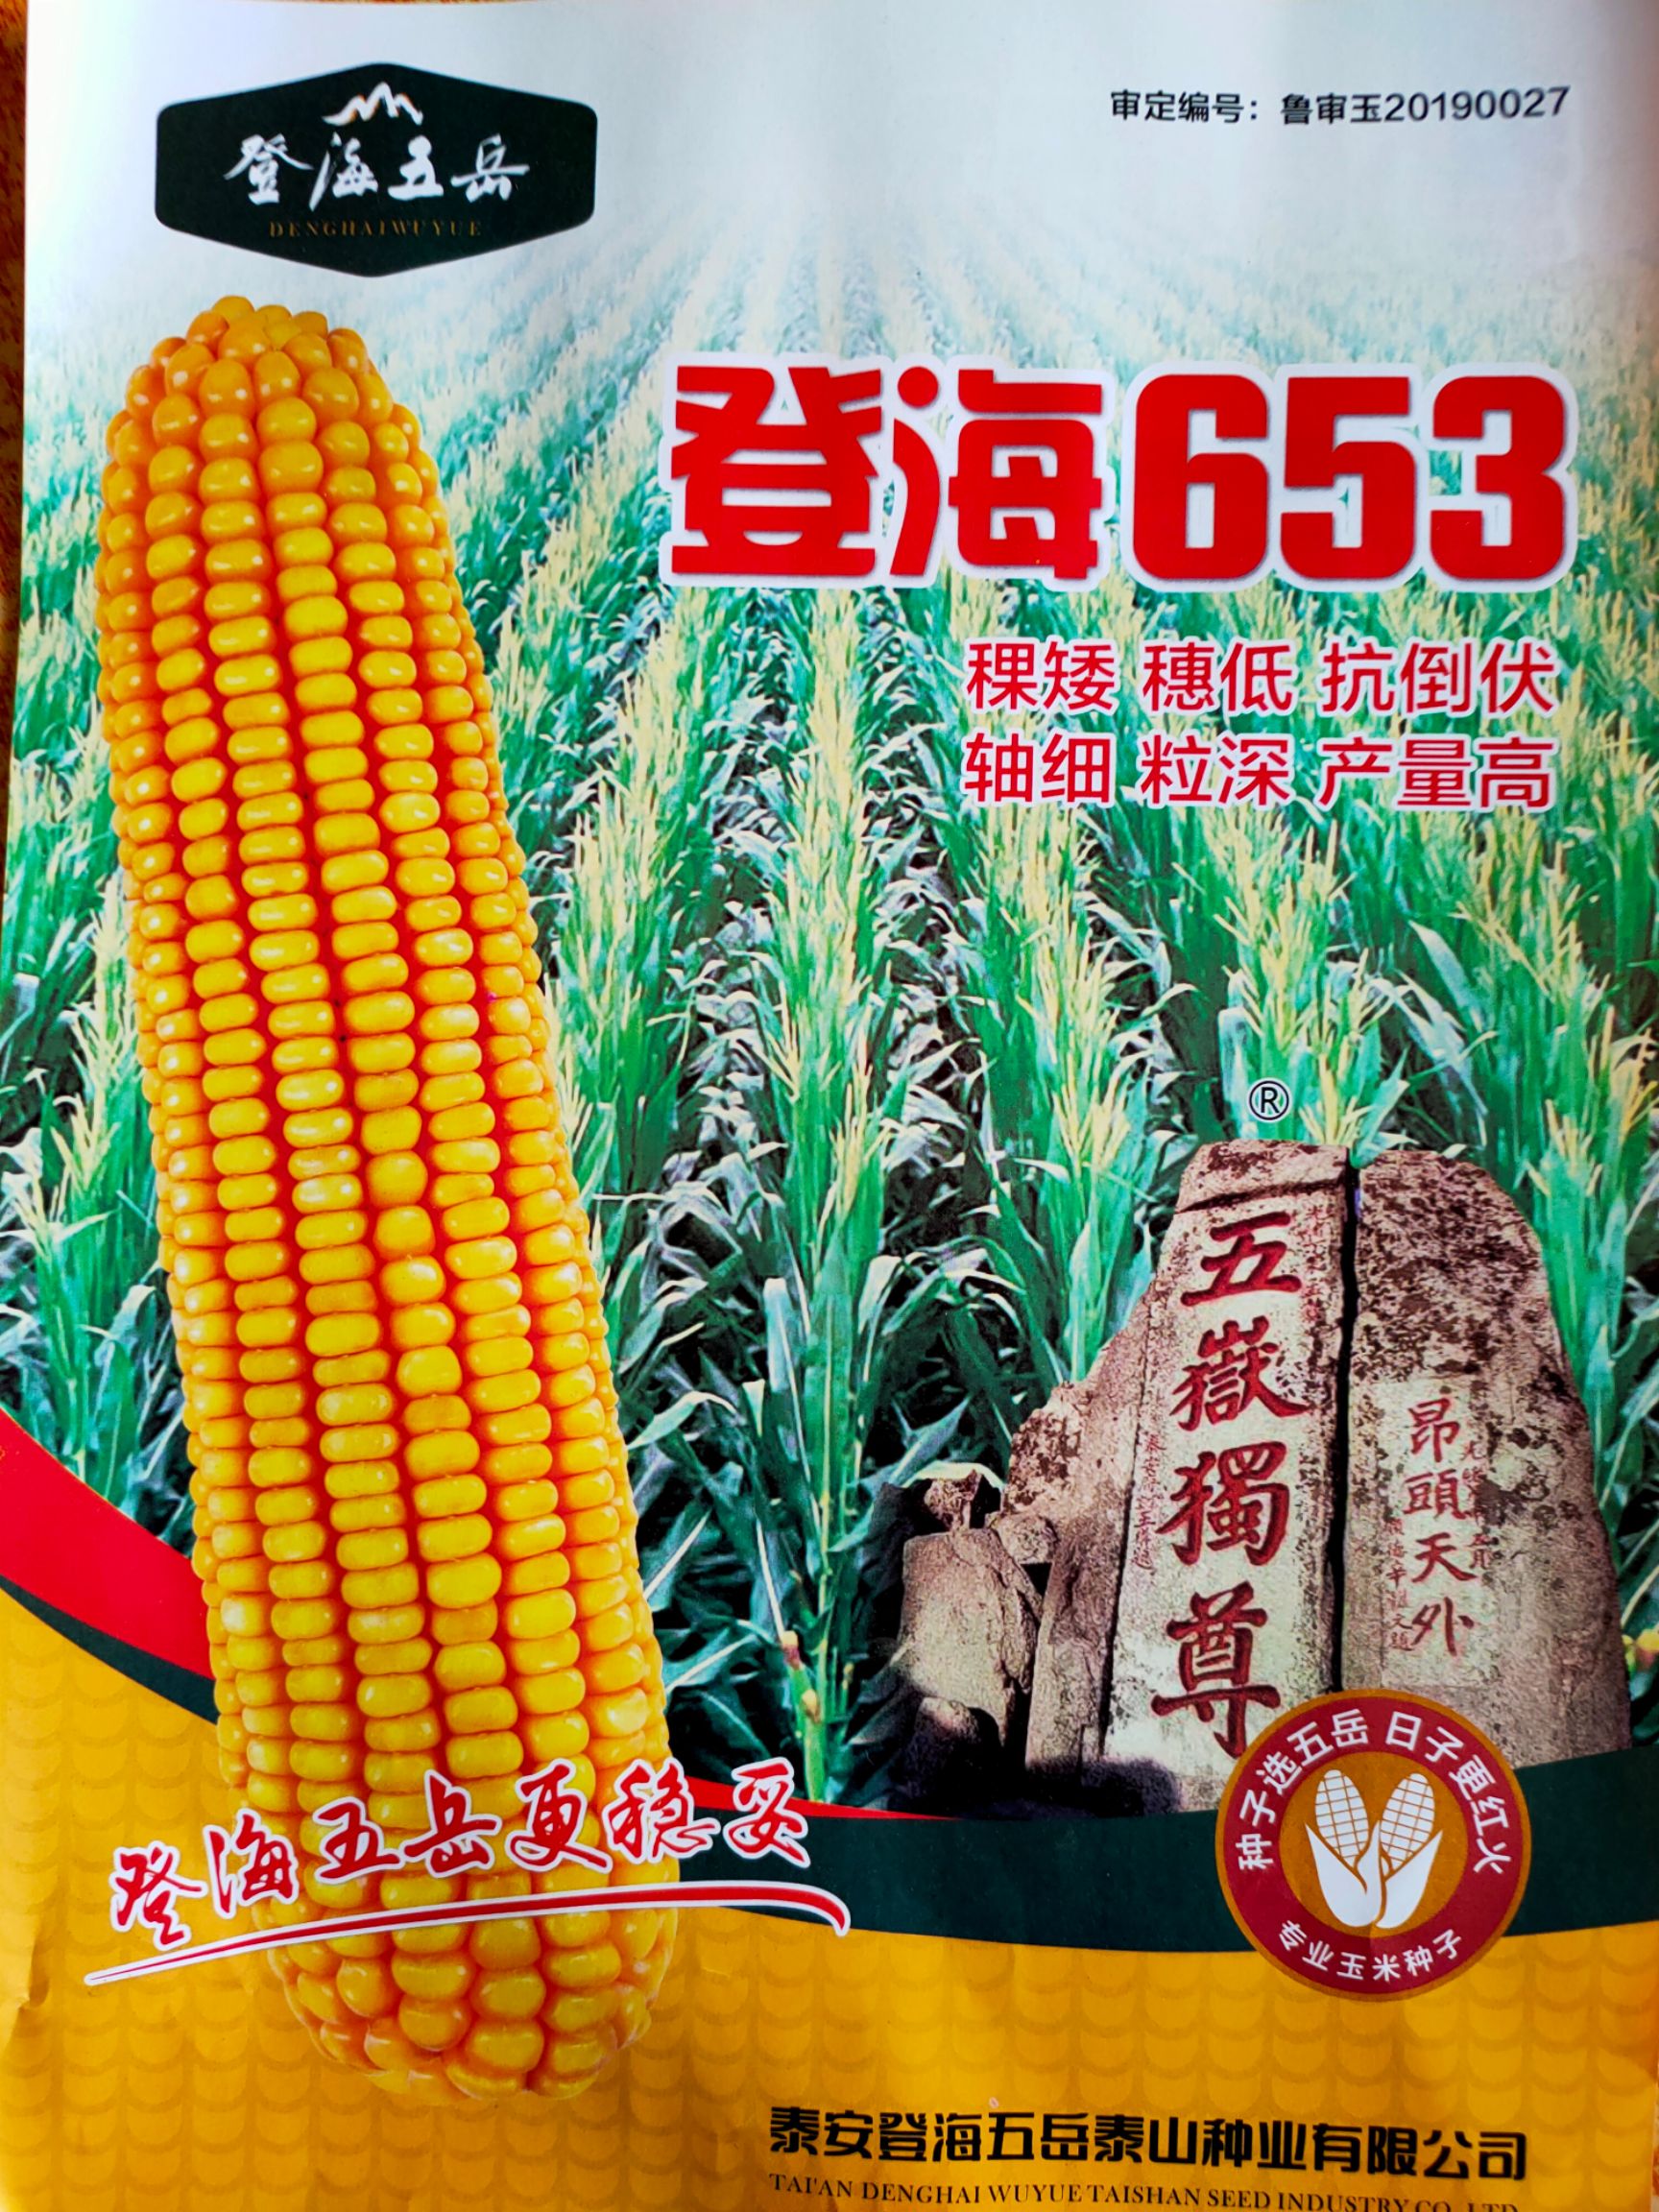 山东济南历城区 登海653玉米种子 七天内行情趋势图